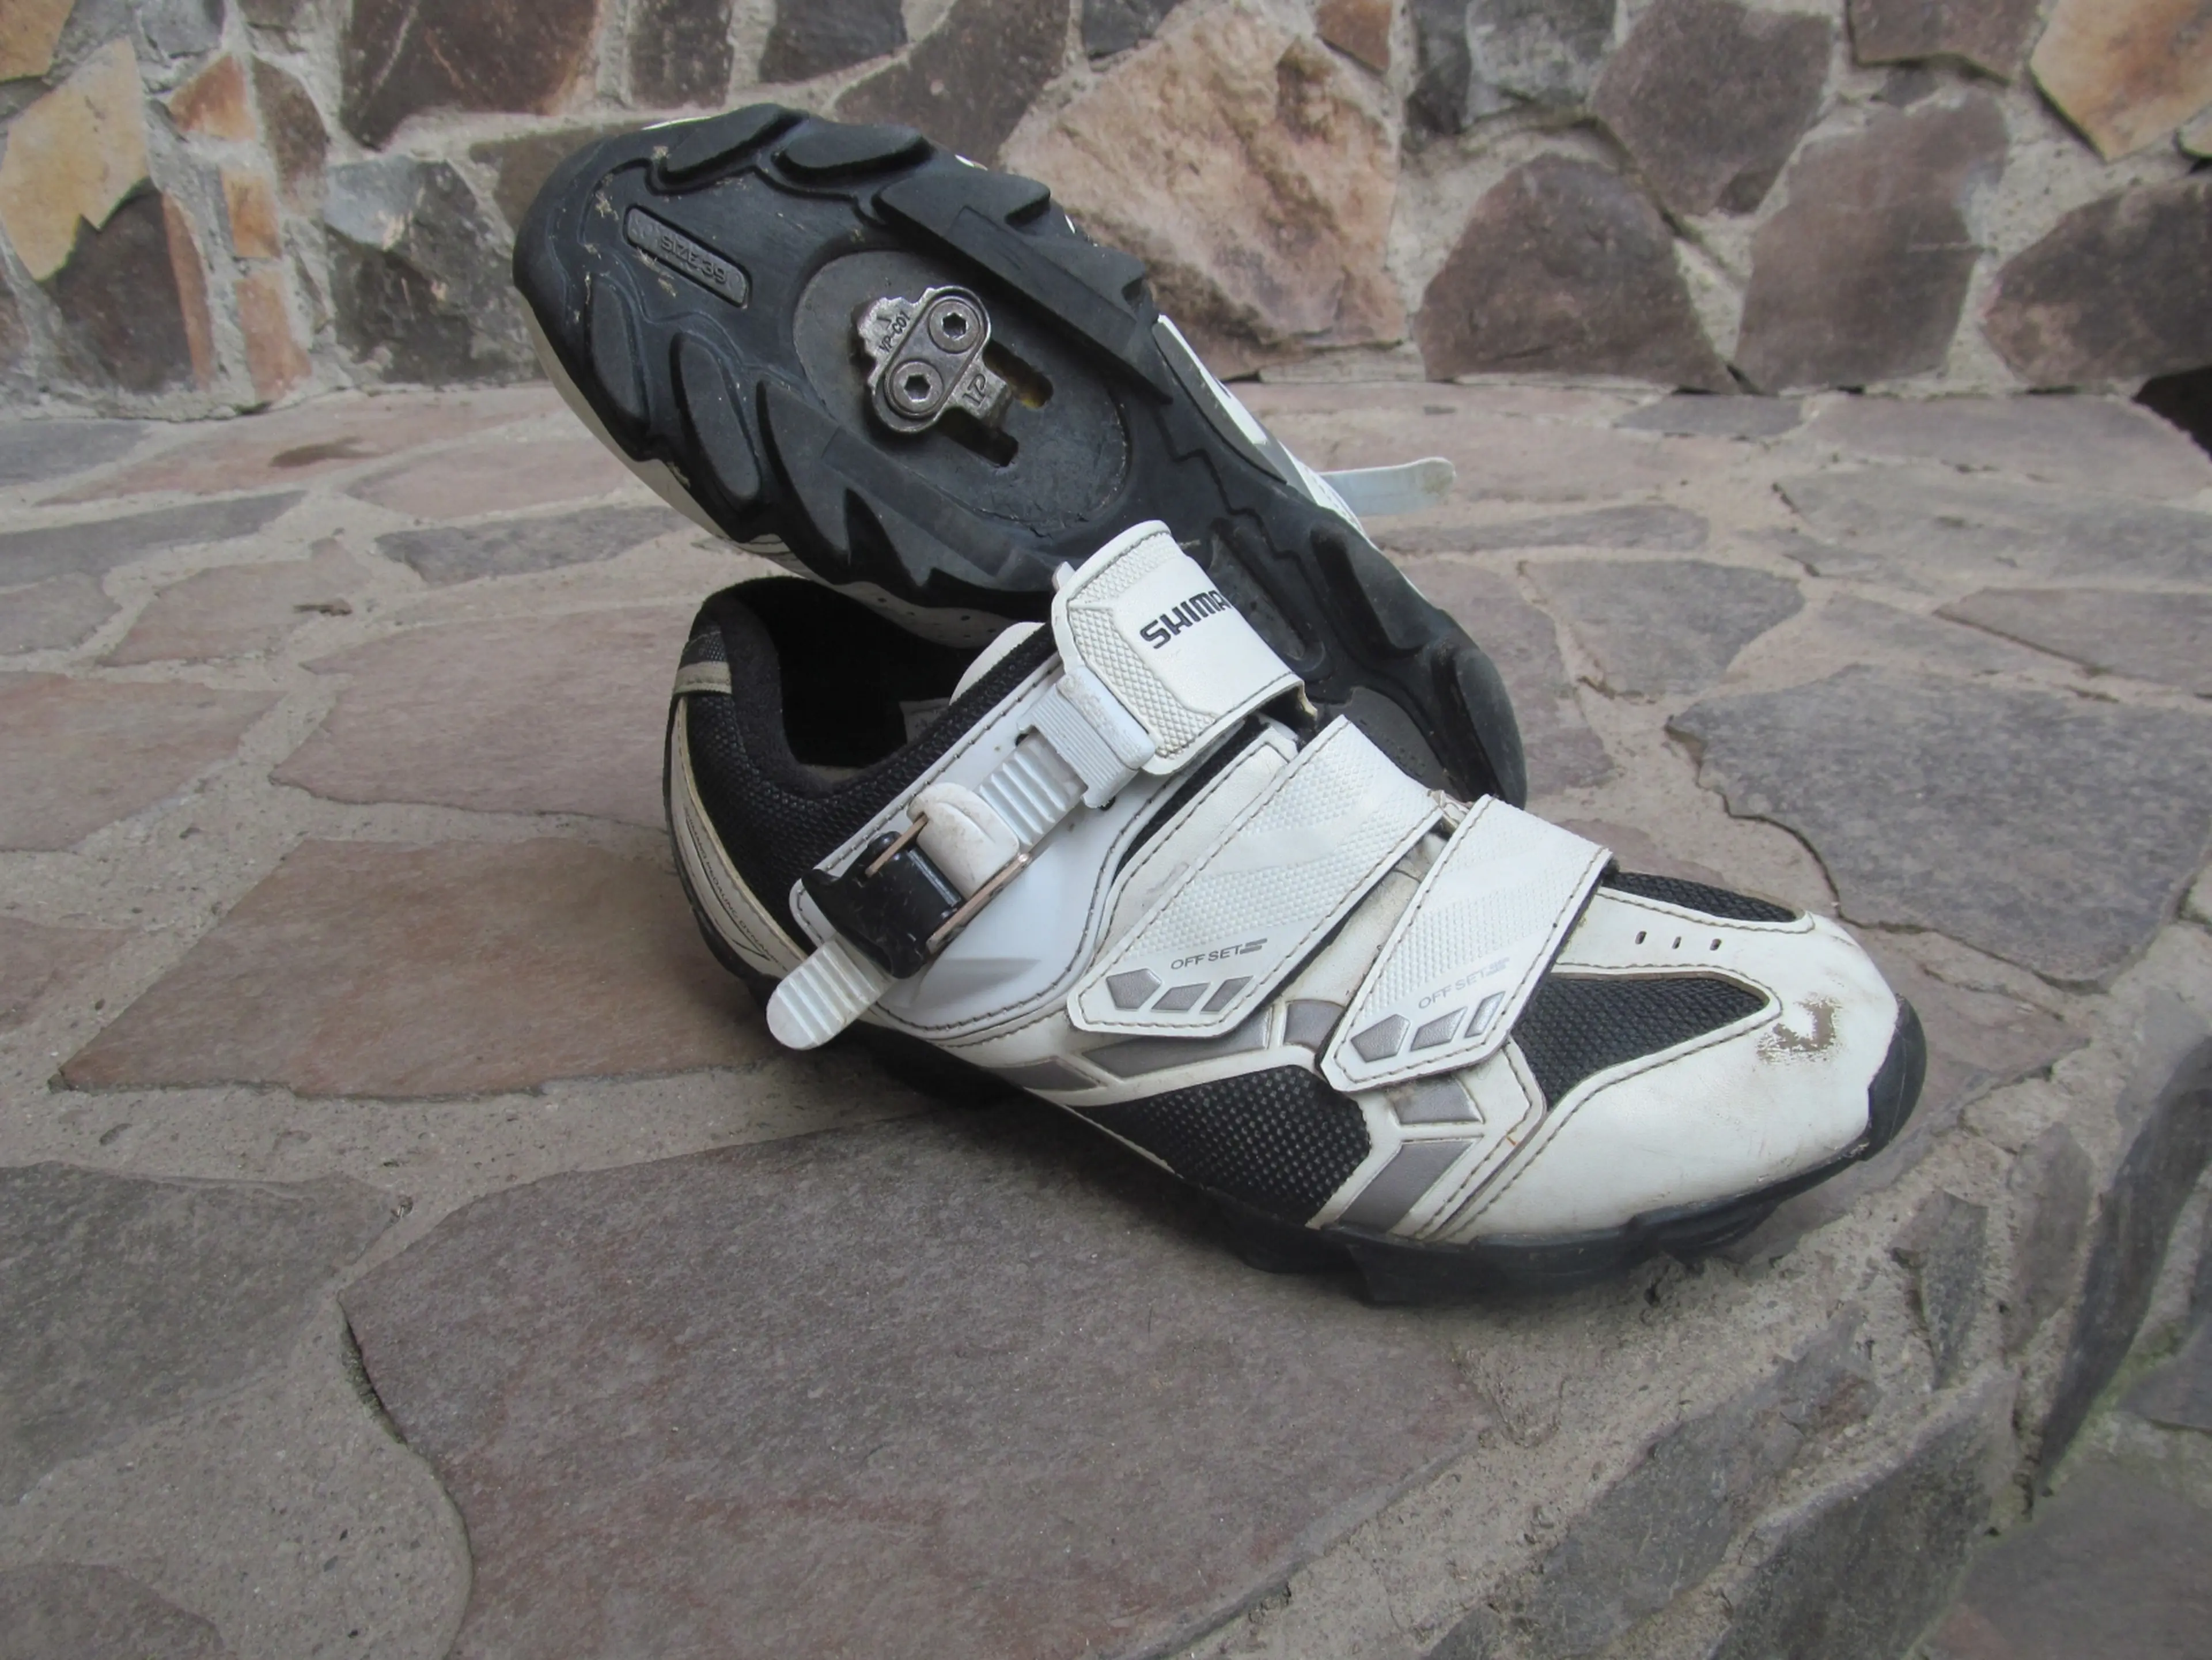 Image Pantofi Shimano SH-WM63W nr 39, 24.5 cm